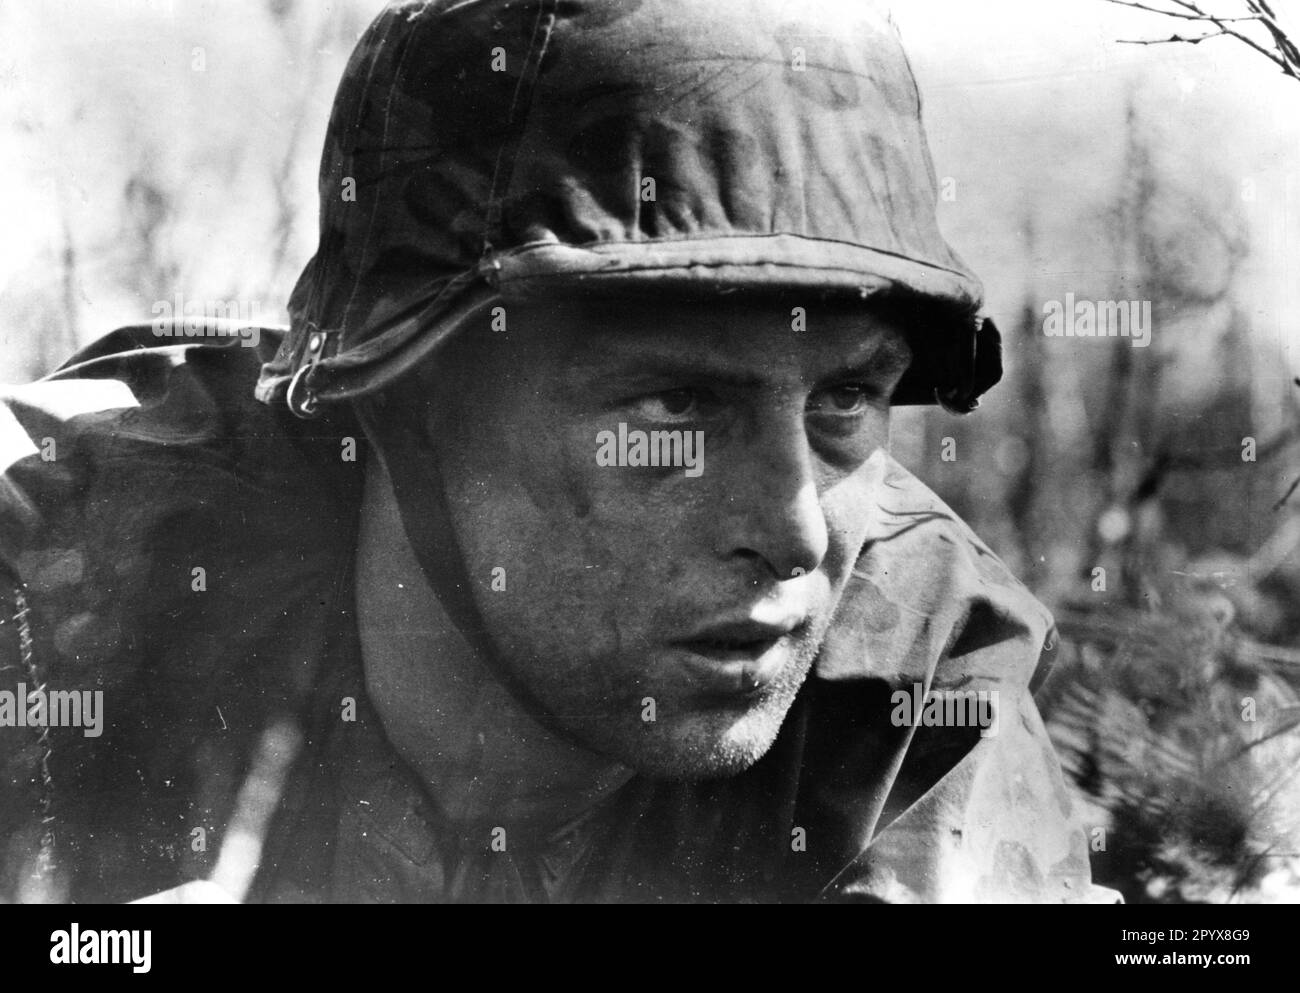 Soldat allemand à Kämofen sur le front oriental, éventuellement pendant le combat de la bataille de Kursk. Photo: Boegel.. [traduction automatique] Banque D'Images